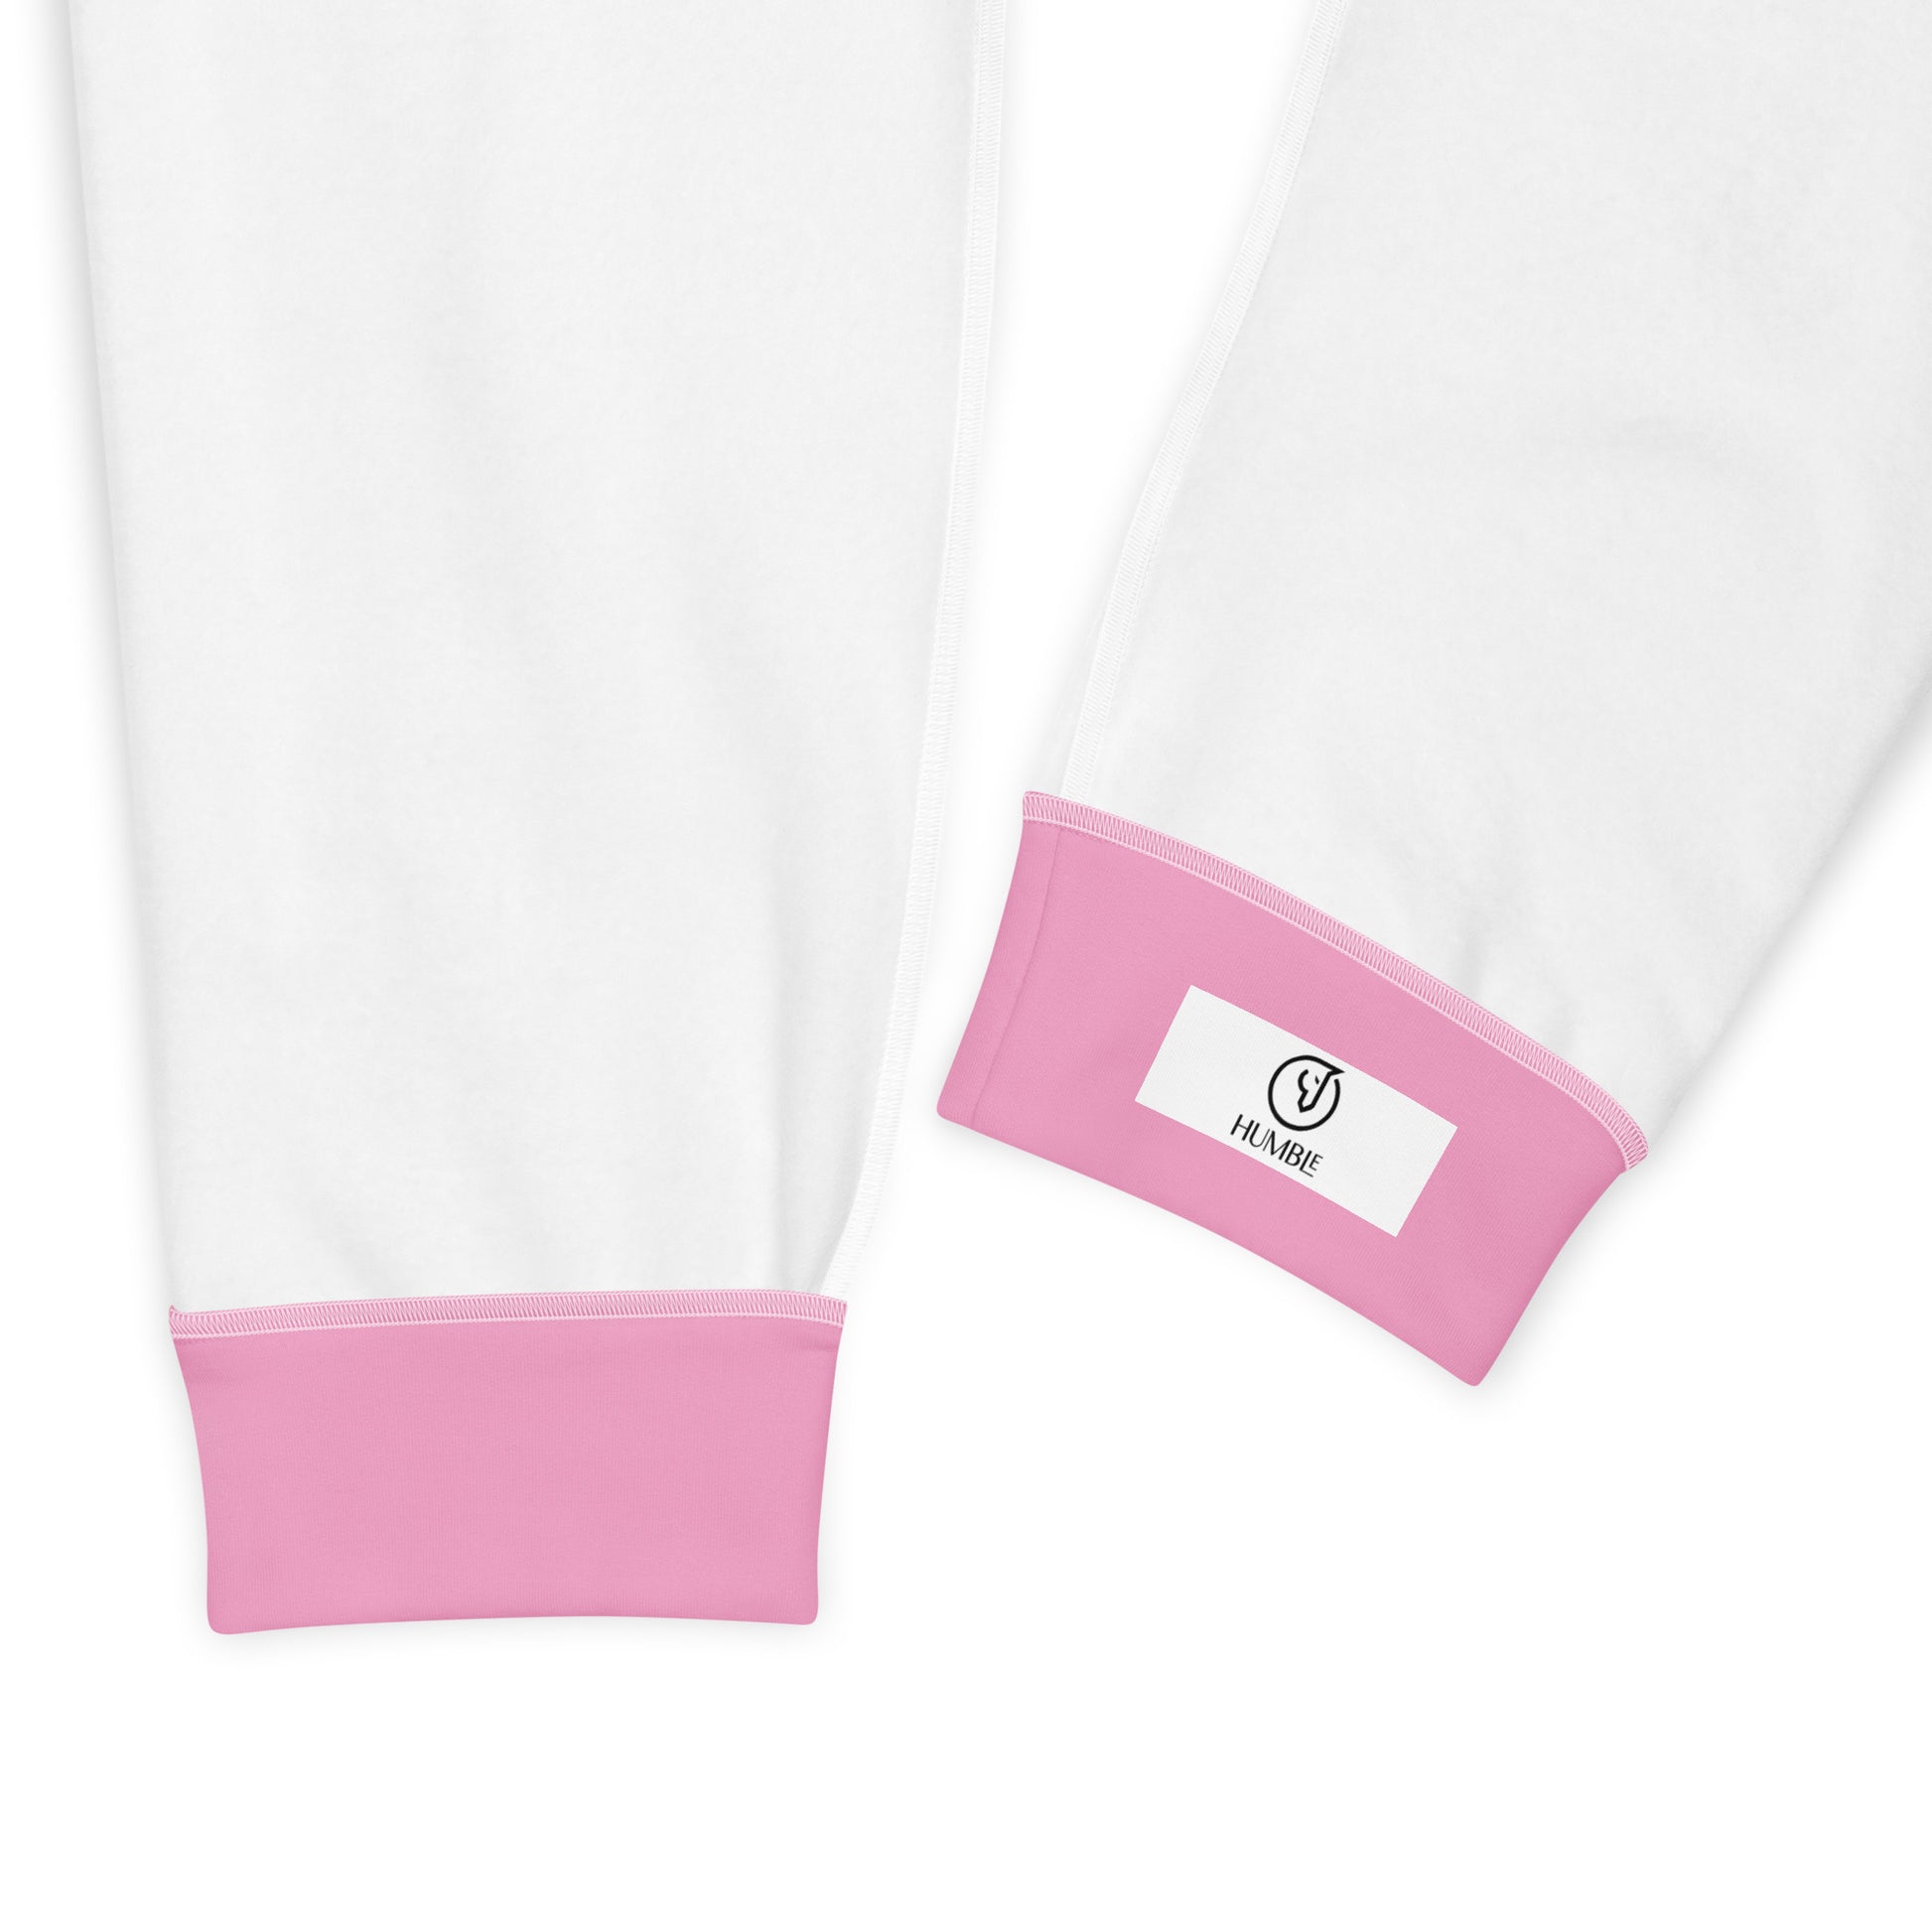 Humble Sportswear™ Women's Soulmate Pink Fleece Joggers - Mireille Fine Art